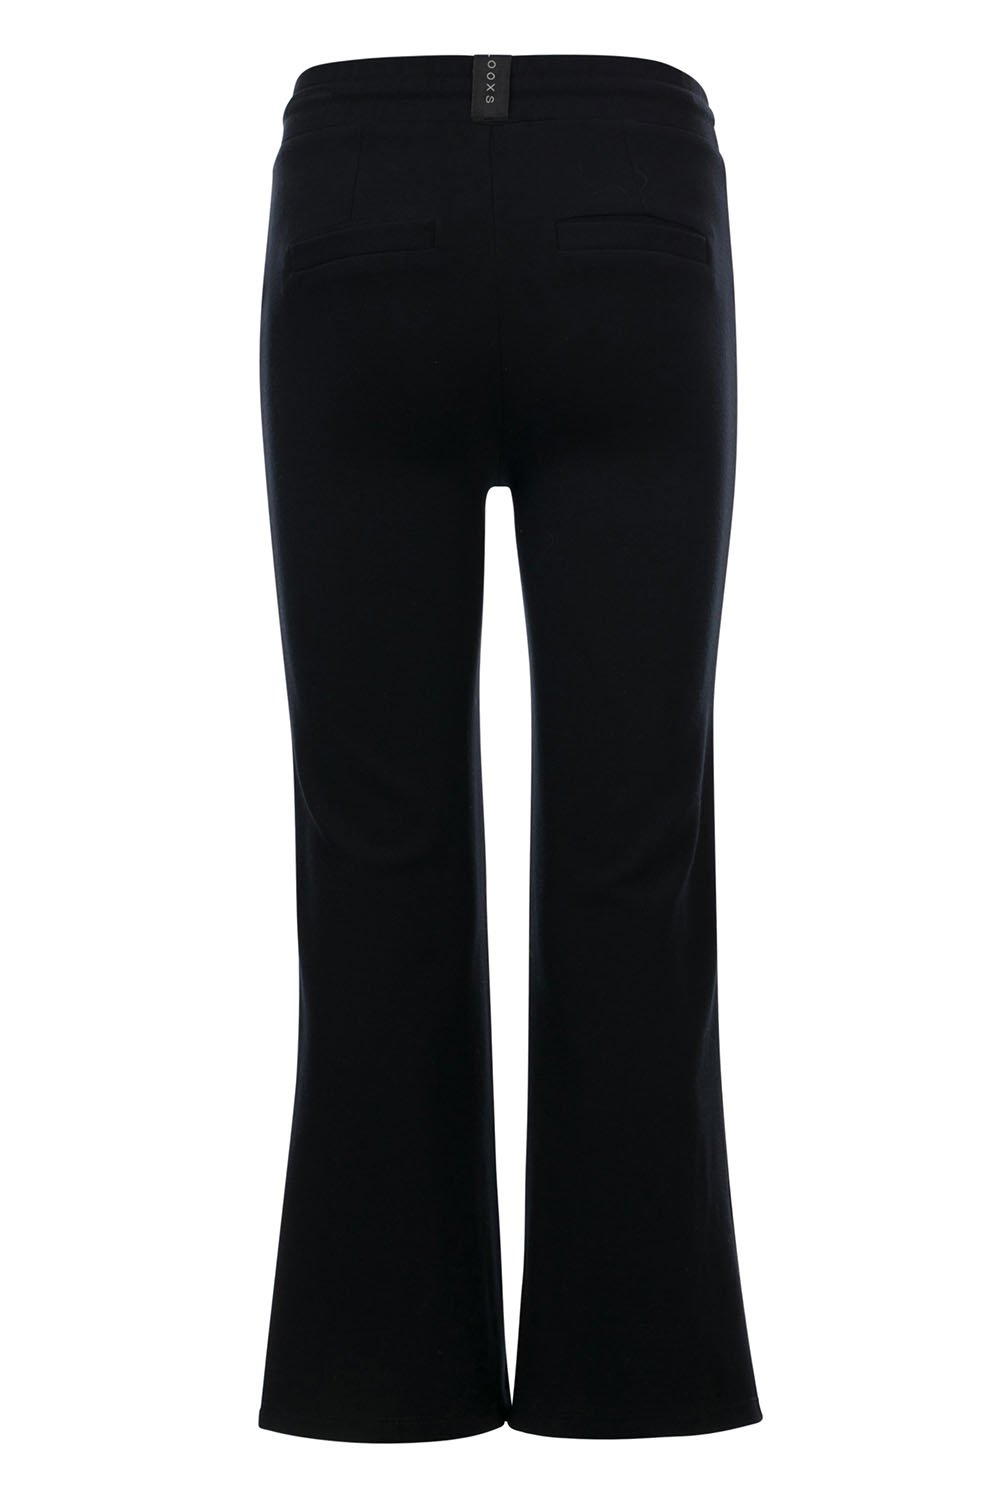 Meisjes 10Sixteen wide leg pants van LOOXS 10sixteen in de kleur black in maat 176.